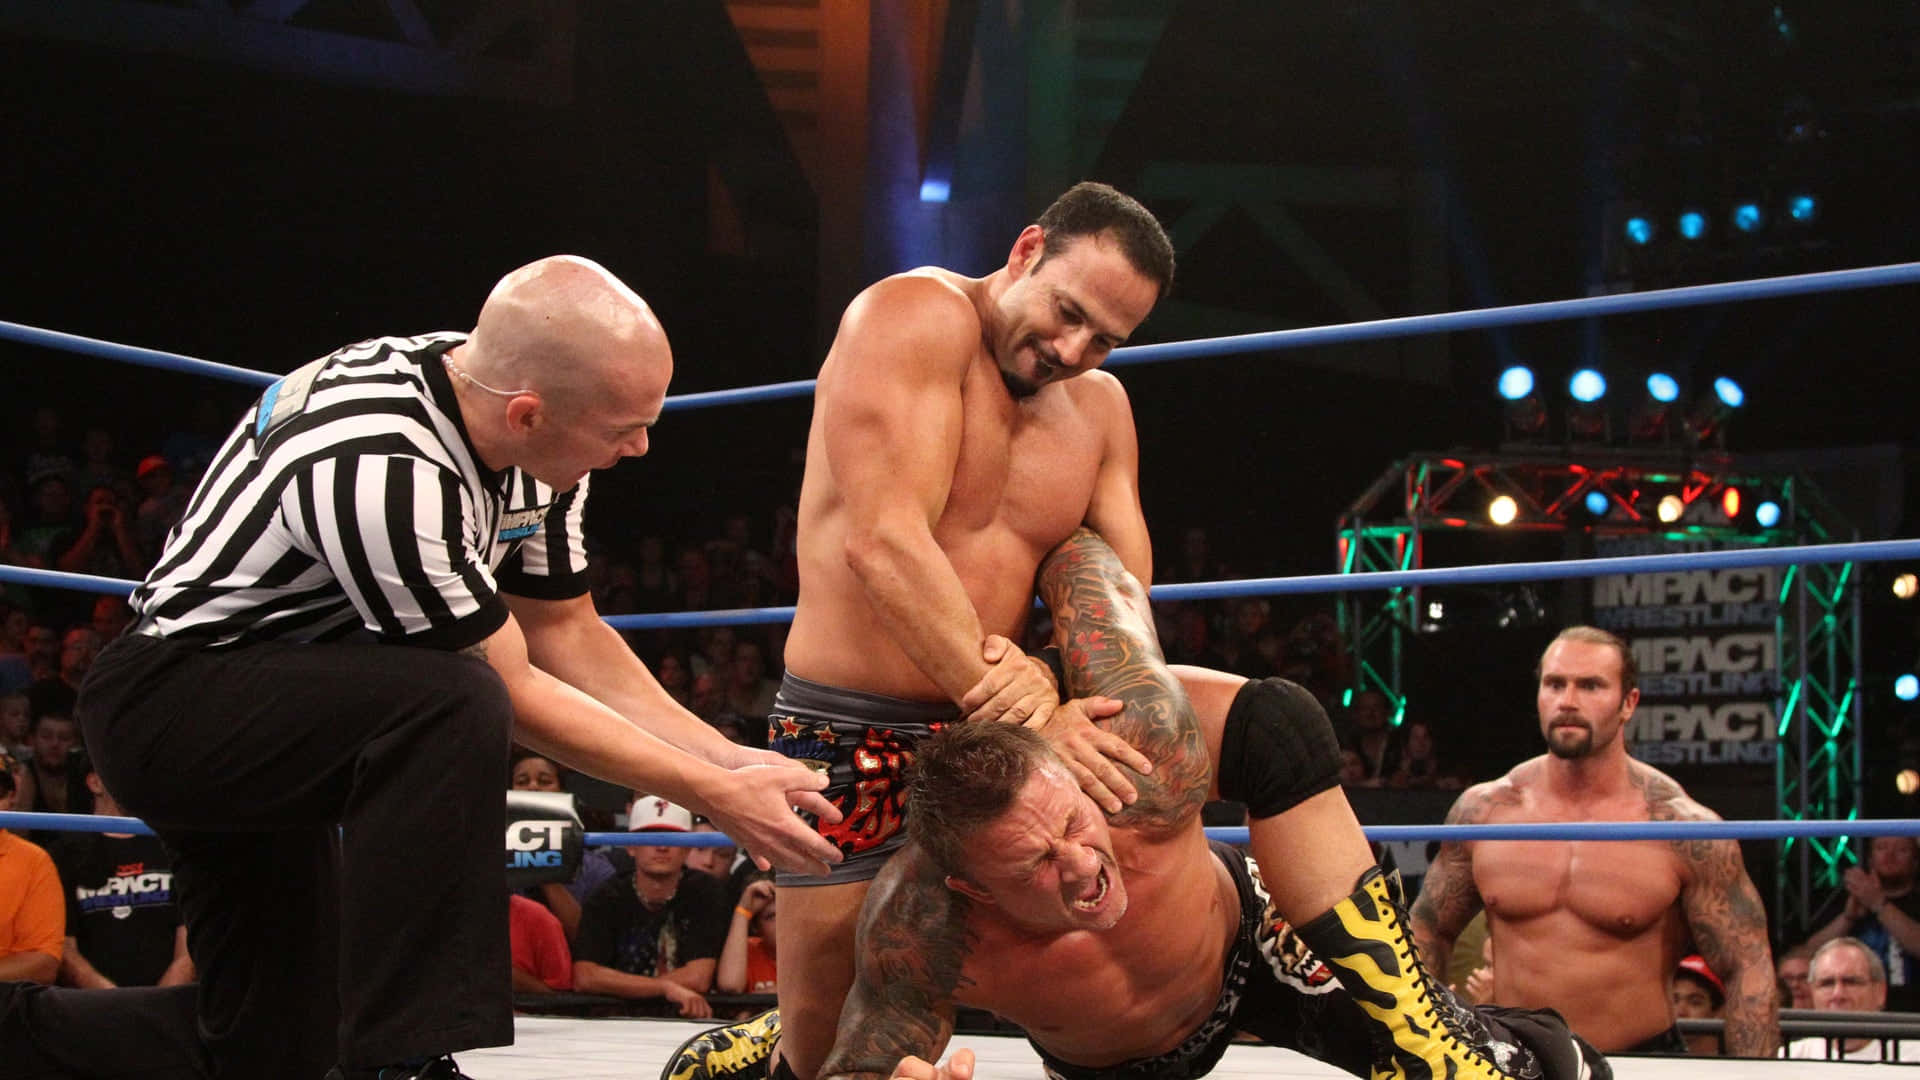 Professional Wrestler Chavo Guerrero Suplex Move Wallpaper